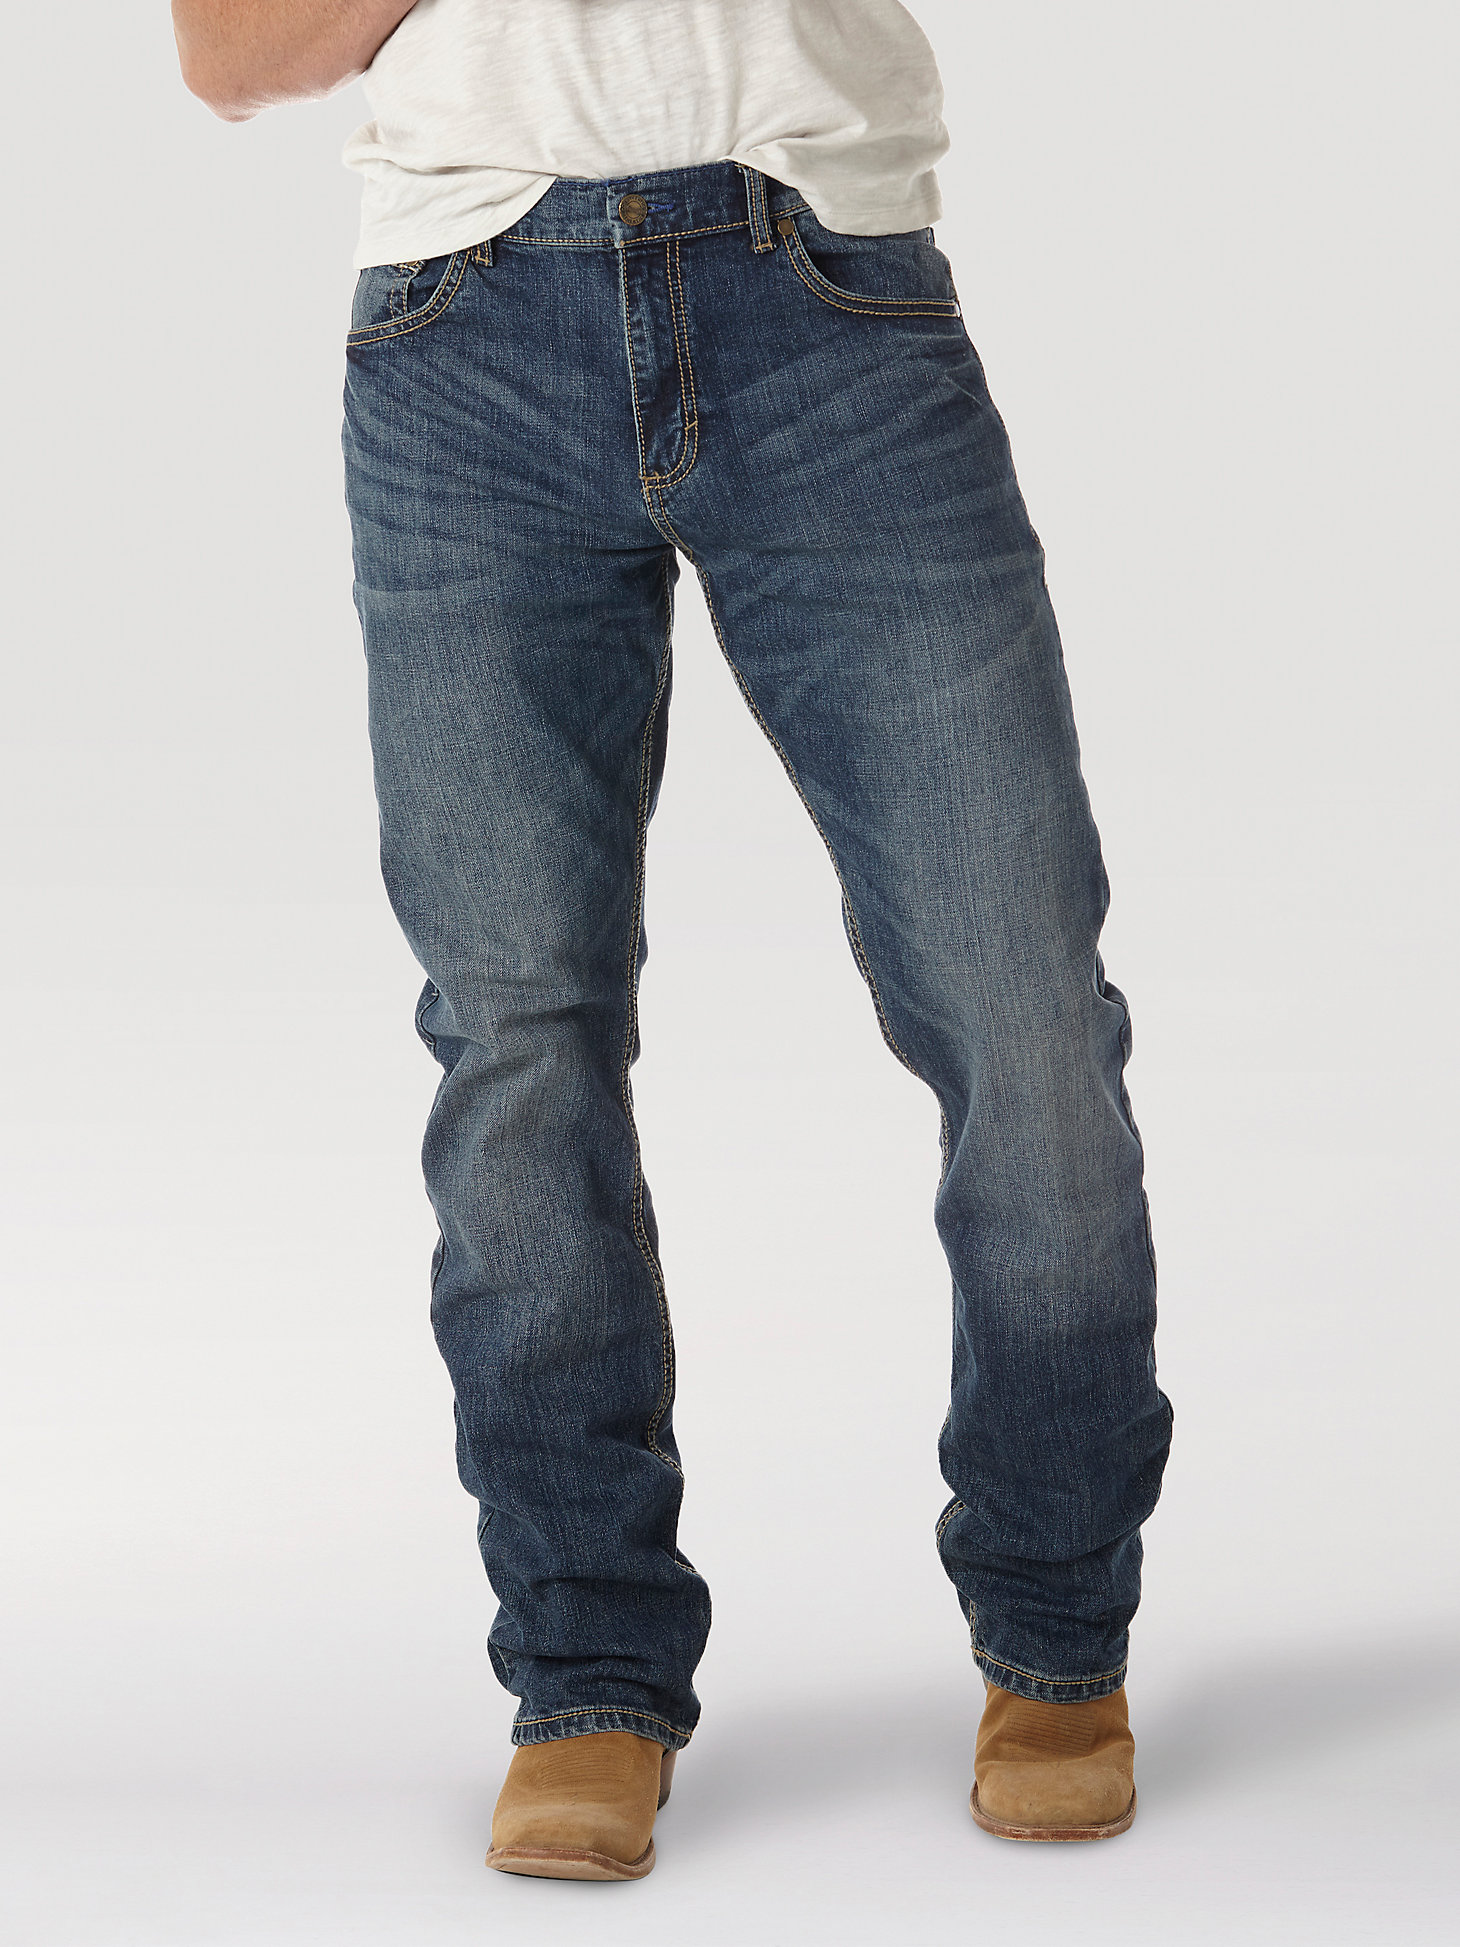 Men's Wrangler Retro® Slim Fit Bootcut Jean in Layton alternative view 1